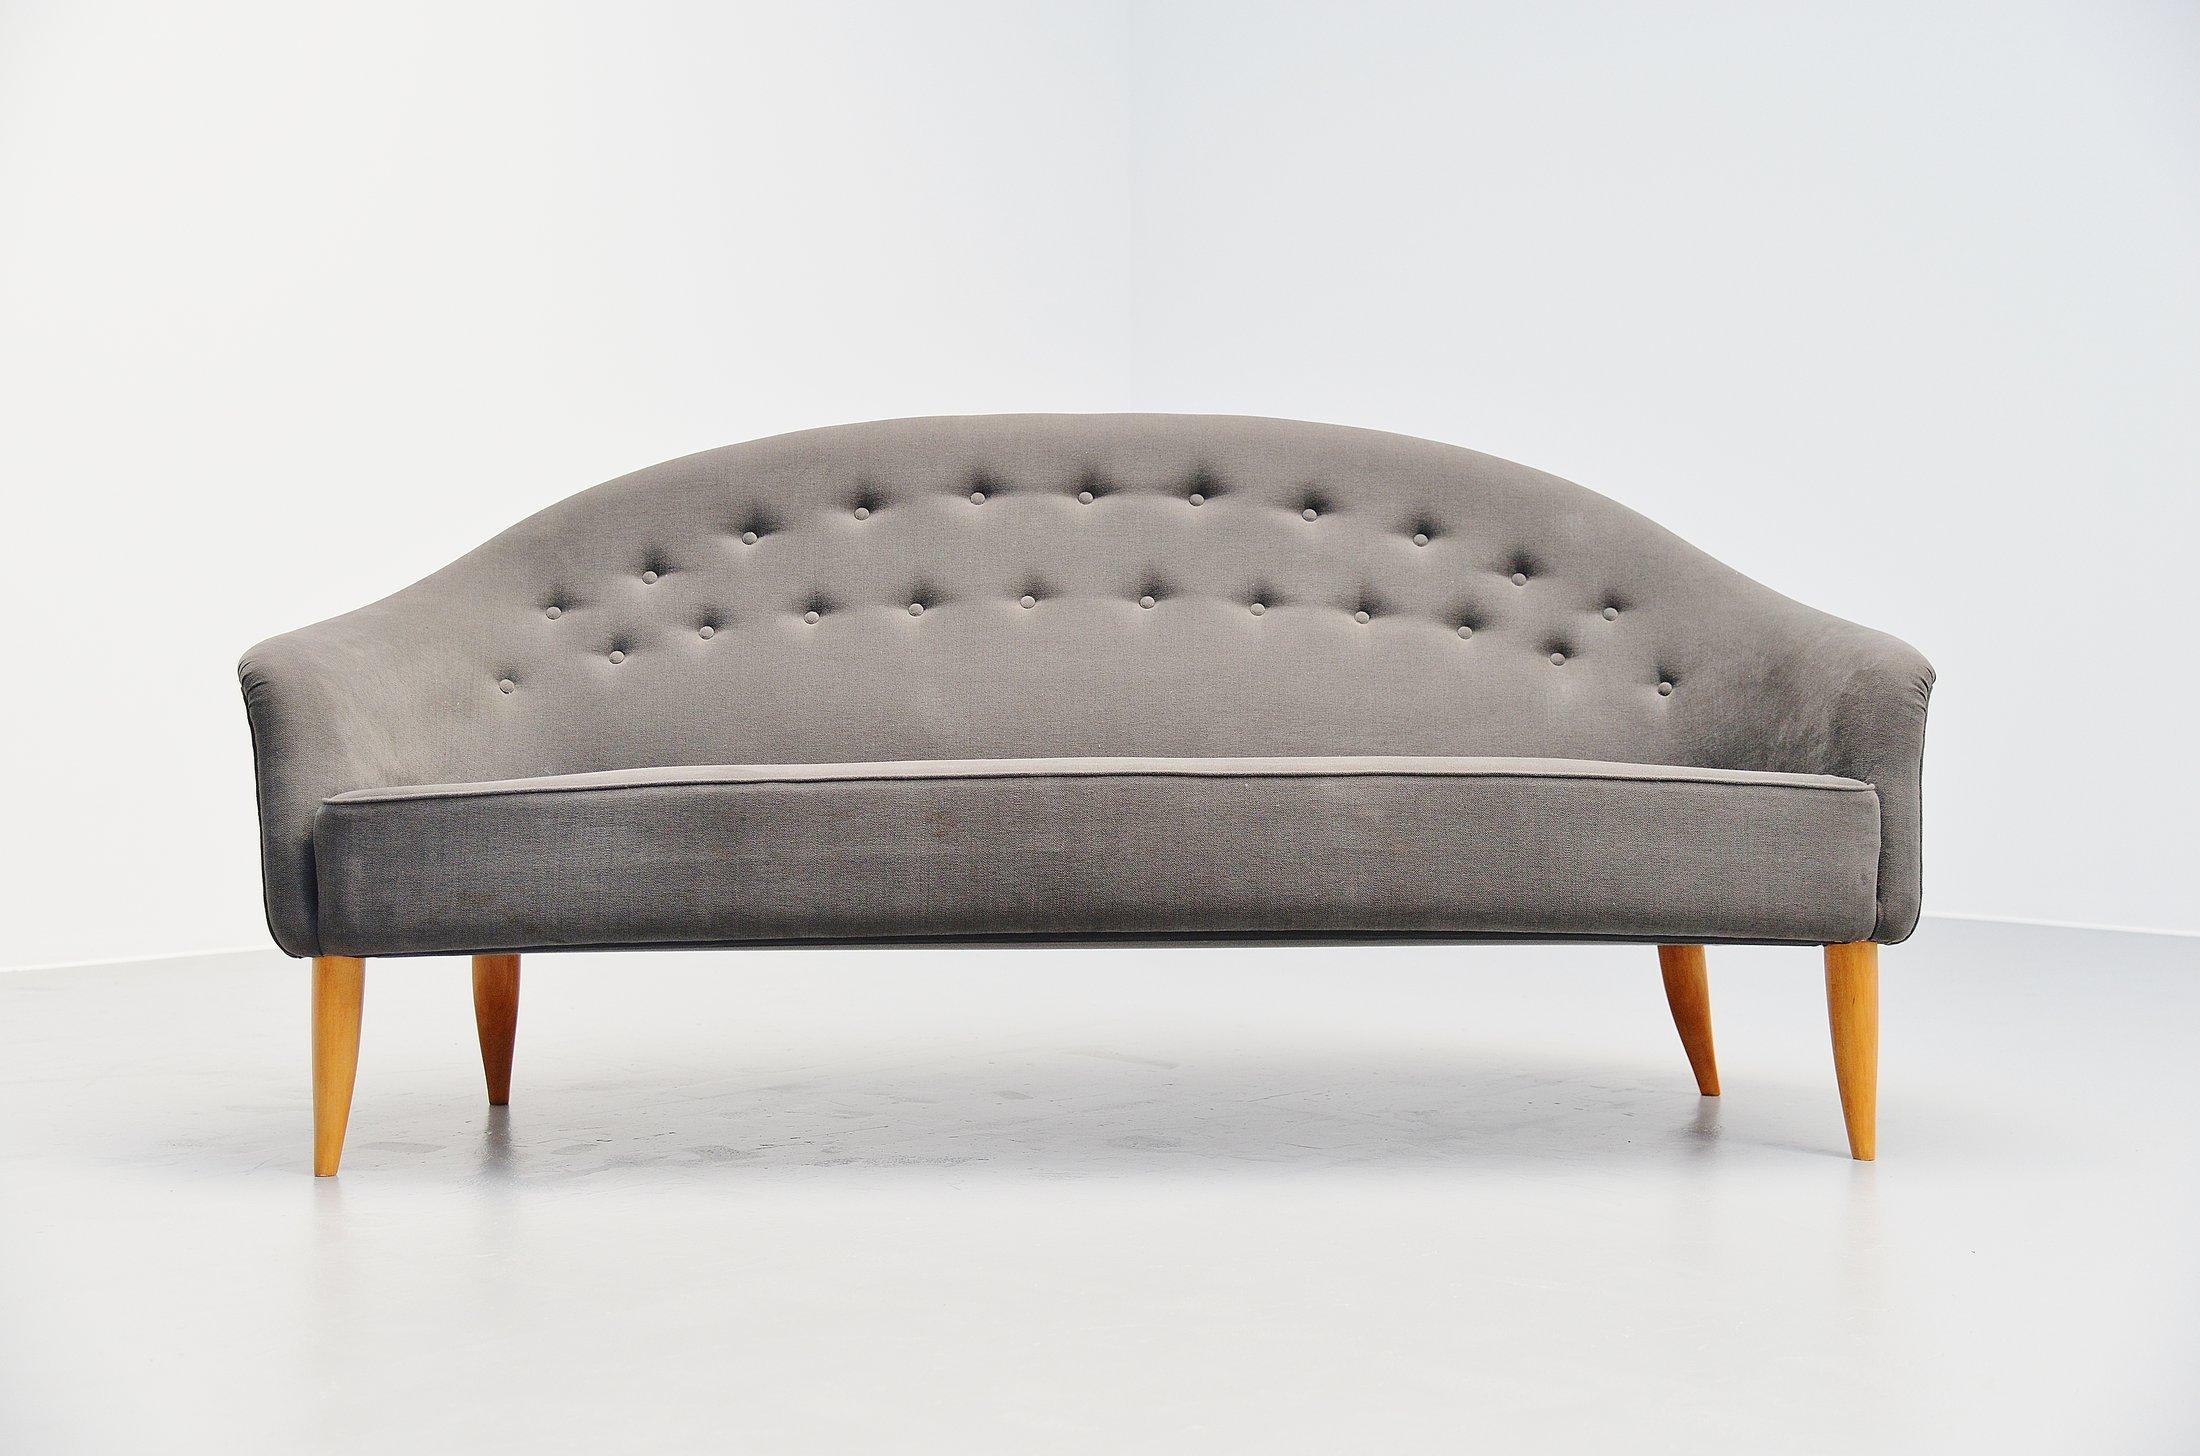 Atemberaubendes Paradies-Sofa, entworfen von Kerstin Hörlin-Holmquist für Nordiska Kompaniet, Schweden, 1958. Dieses Sofa hat sehr schöne, für diese Zeit typische organische Formen und geschwungene organische Beine. Die skandinavische Raffinesse ist